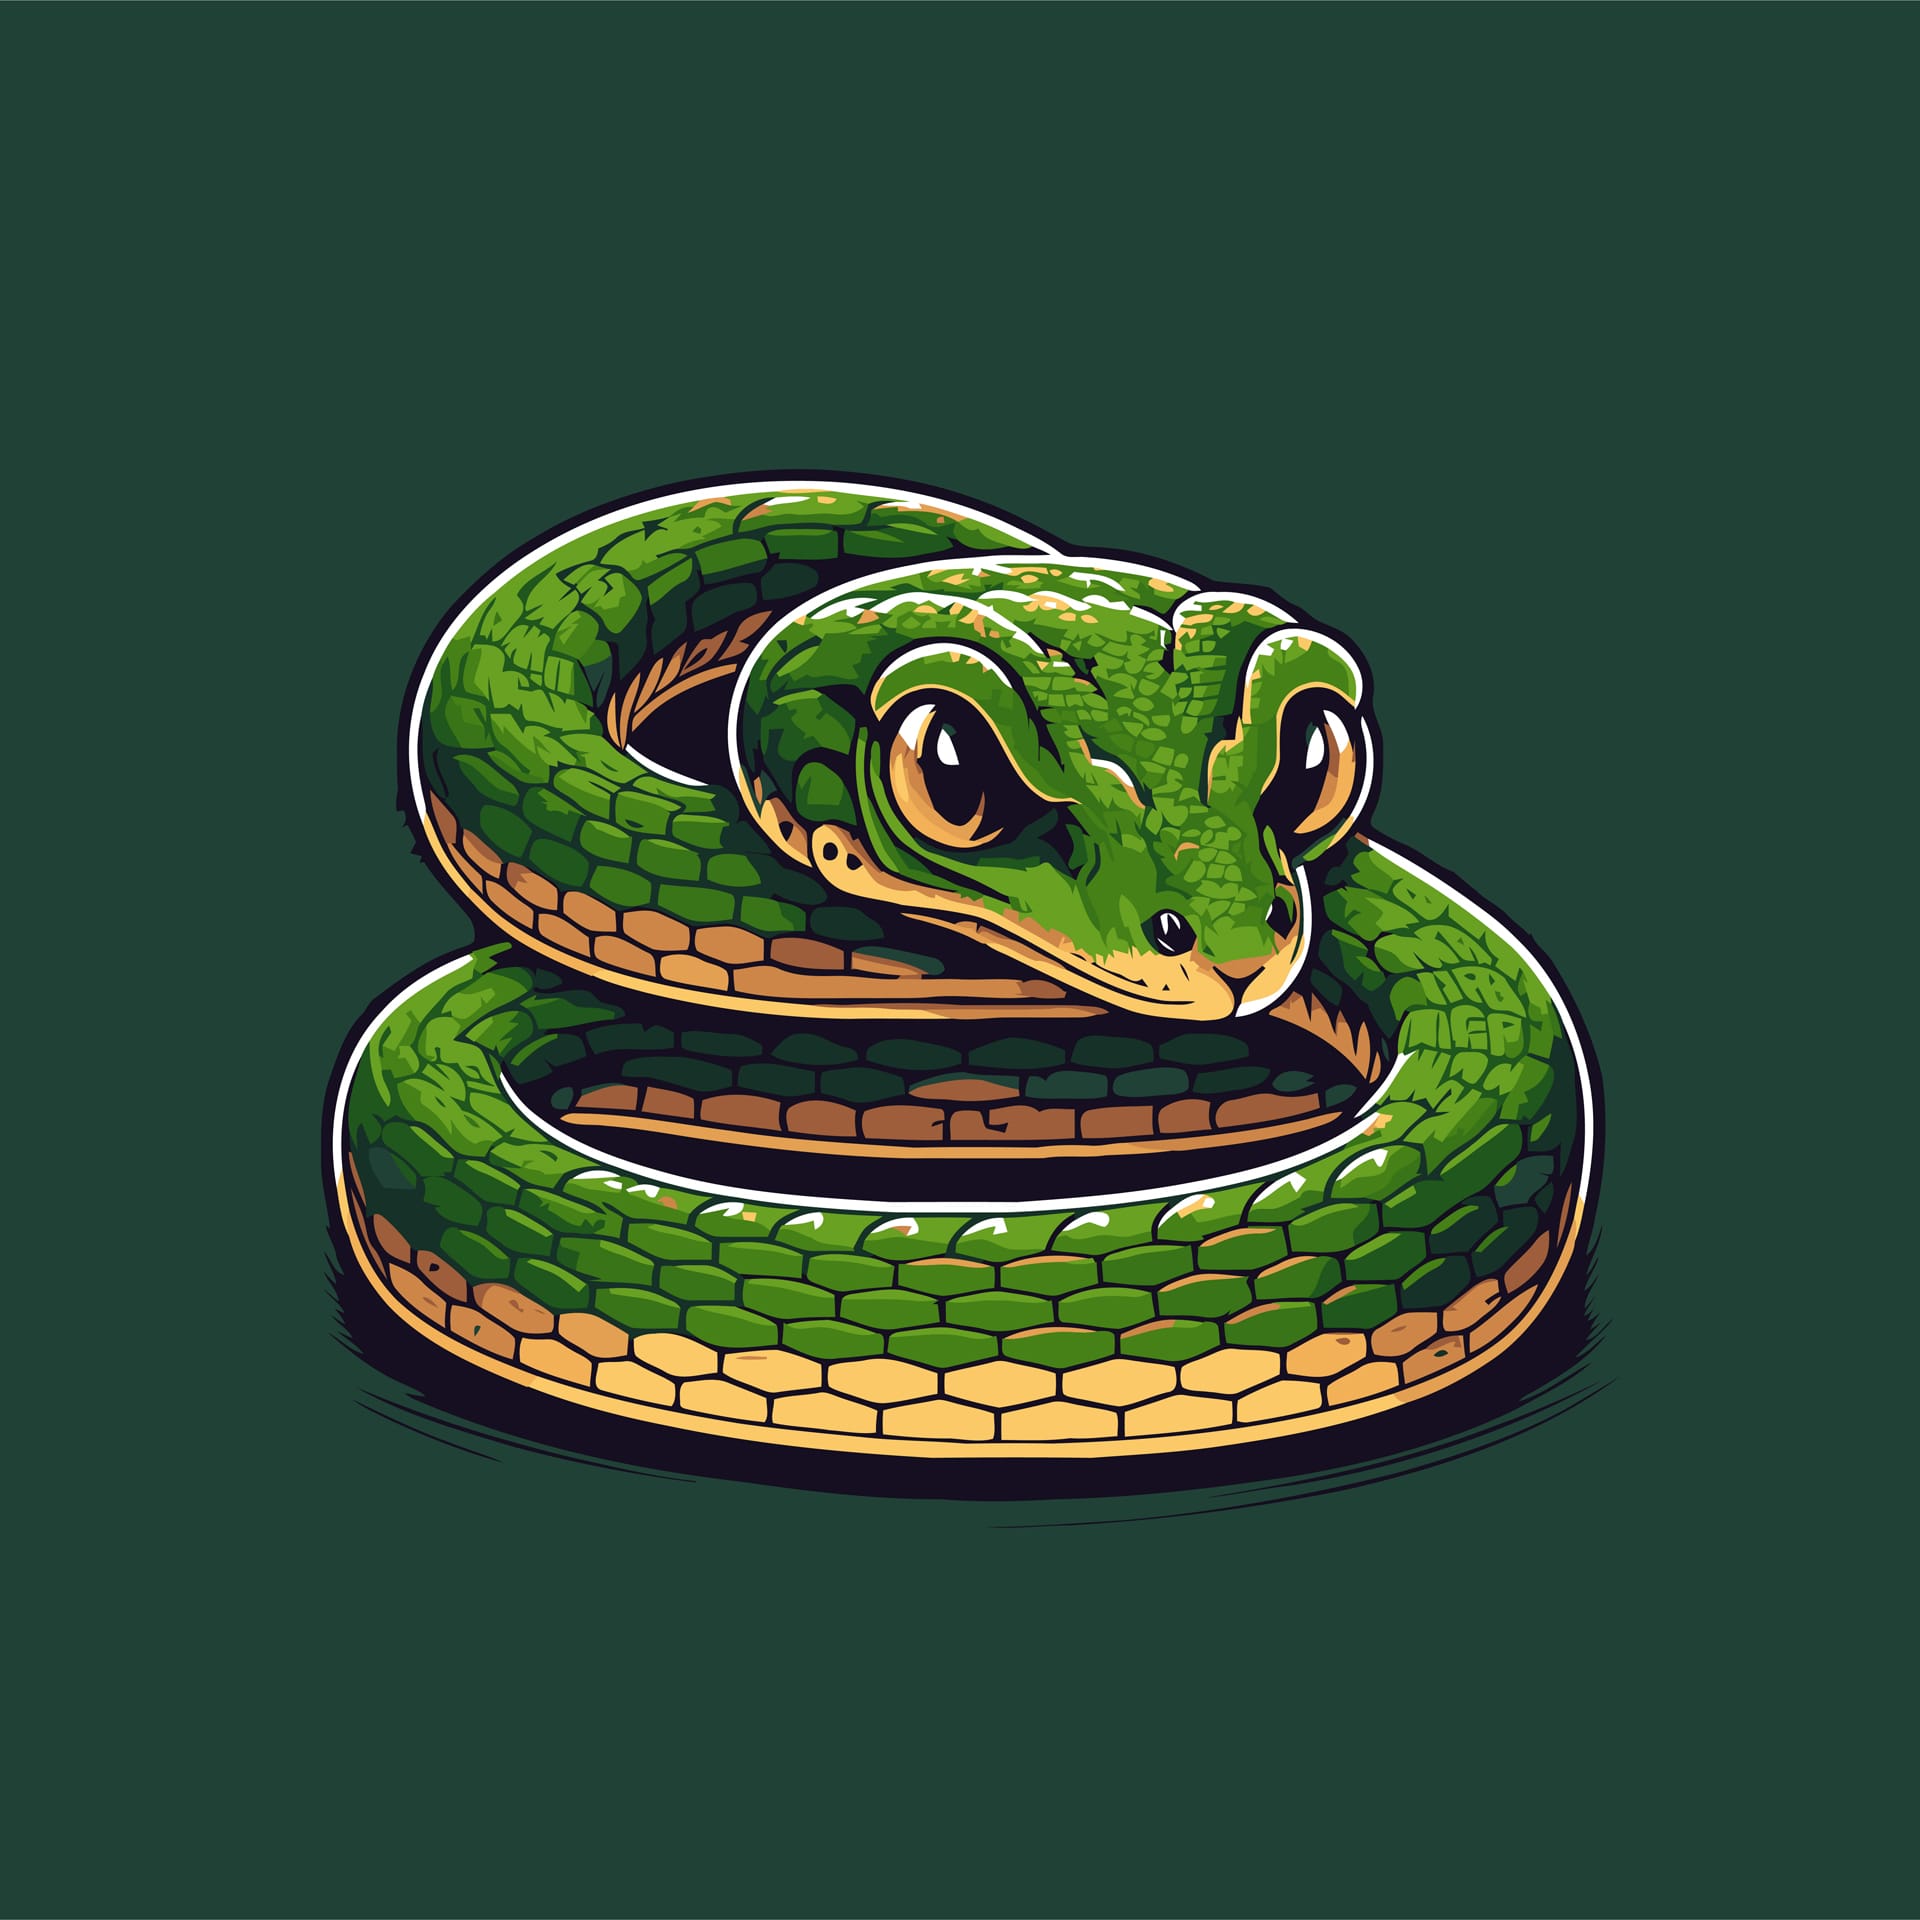 Green snake crawling character logo mascot badge cartoon style